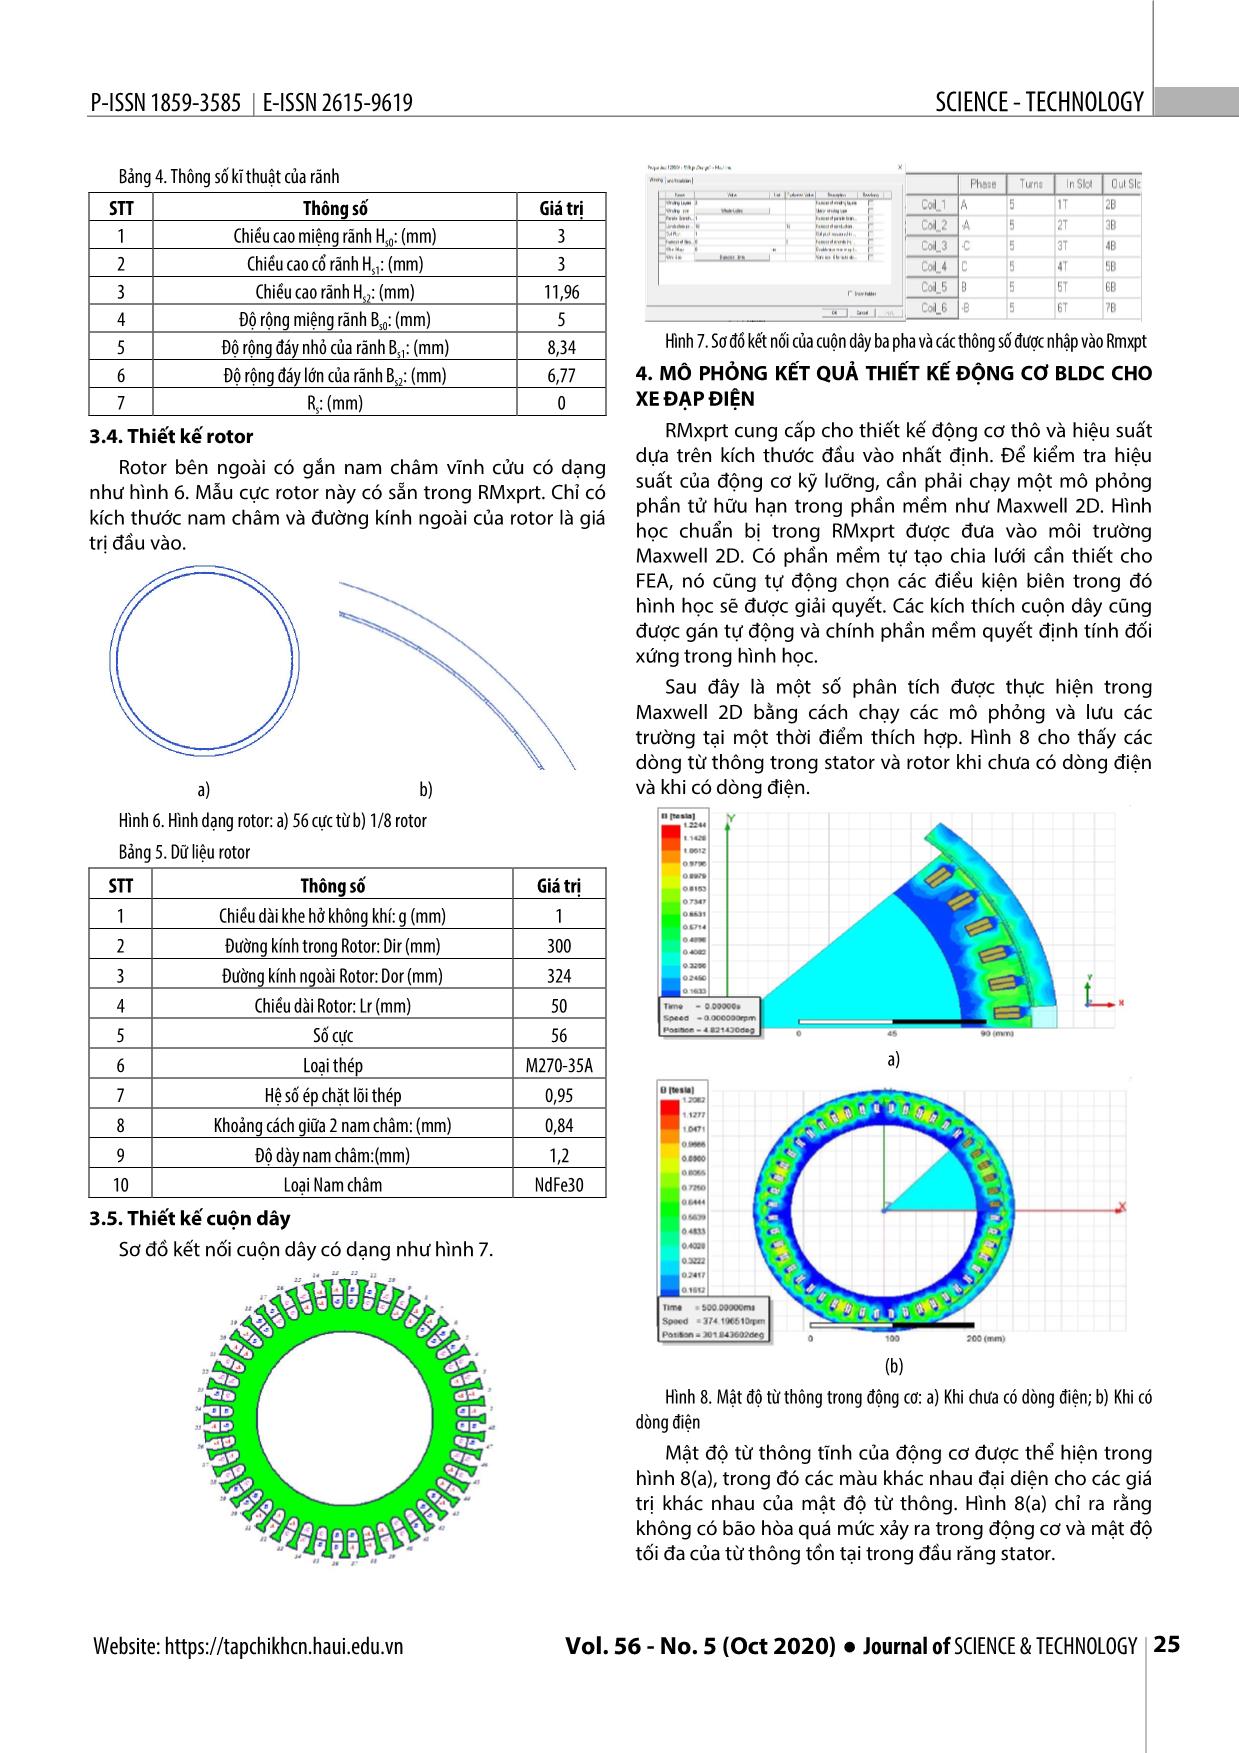 Thiết kế động cơ một chiều không chổi than rotor ngoài cho xe đạp điện sử dụng ansys trang 4